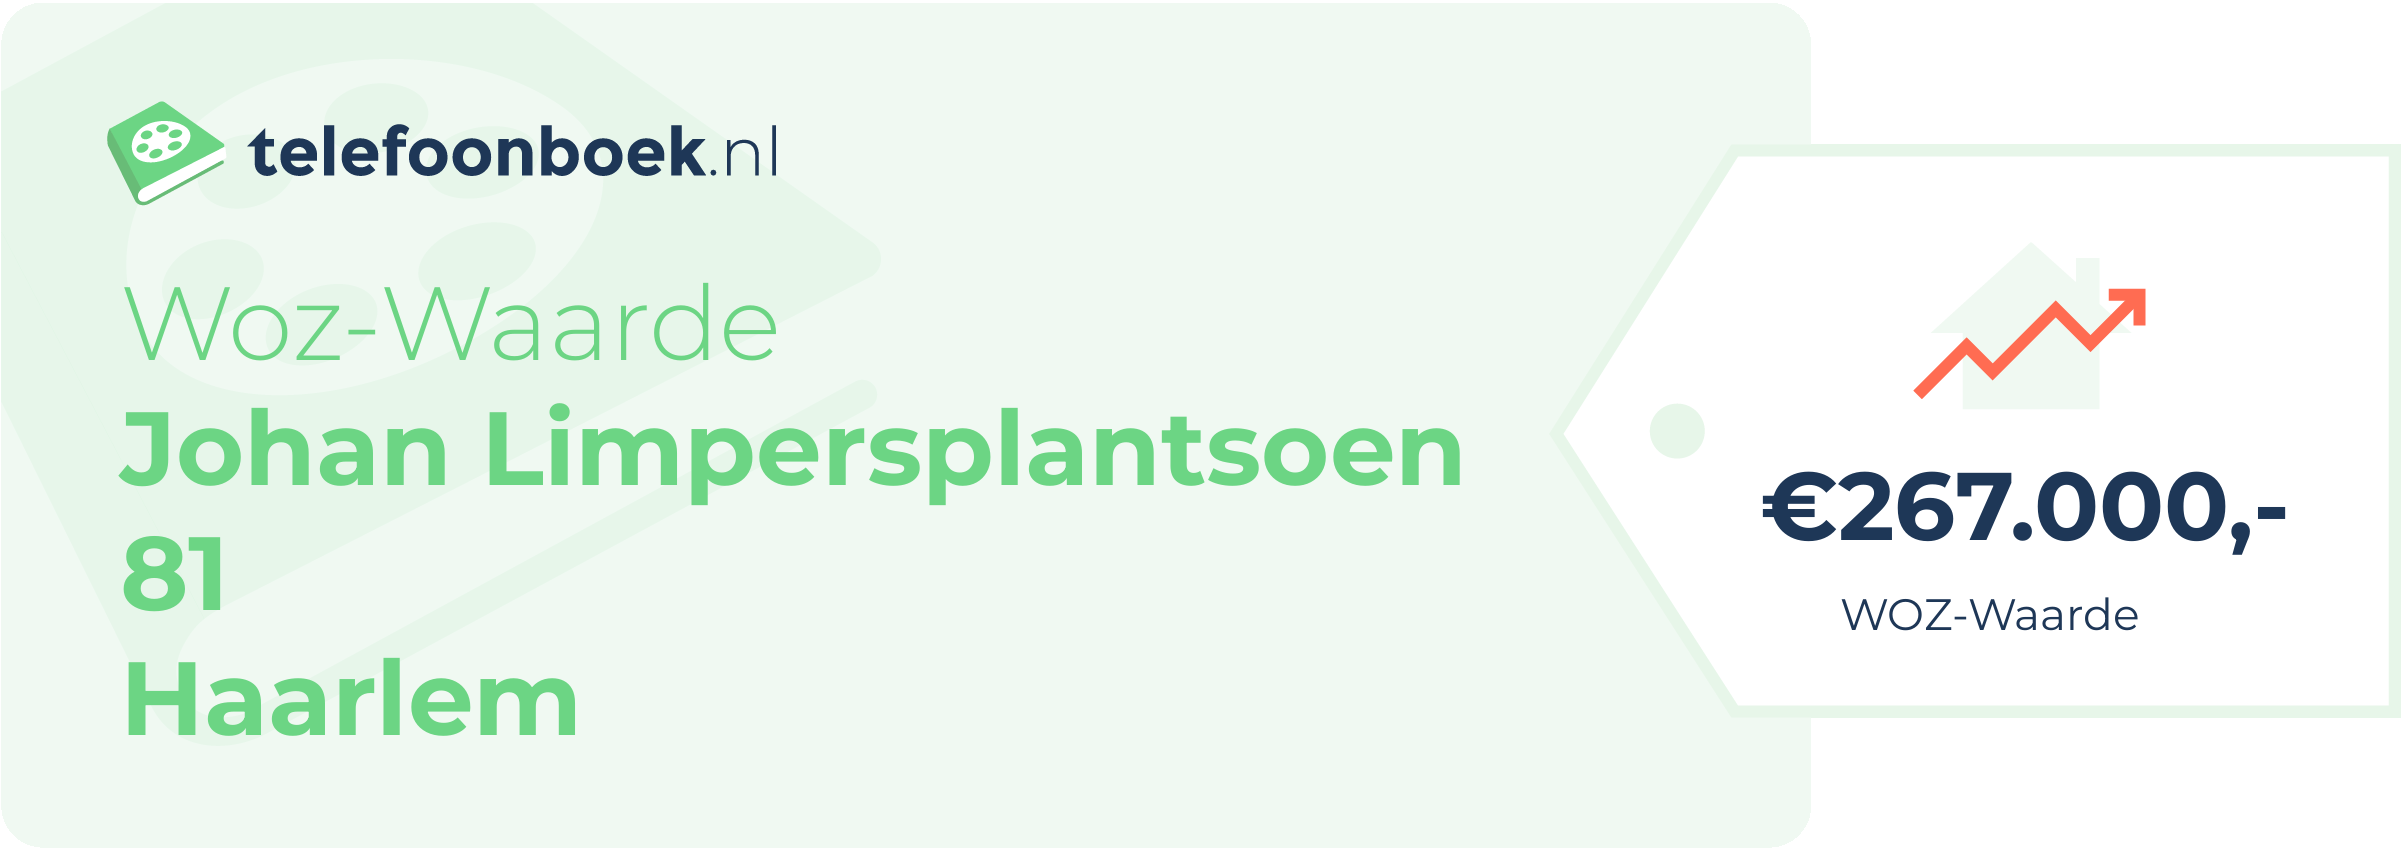 WOZ-waarde Johan Limpersplantsoen 81 Haarlem